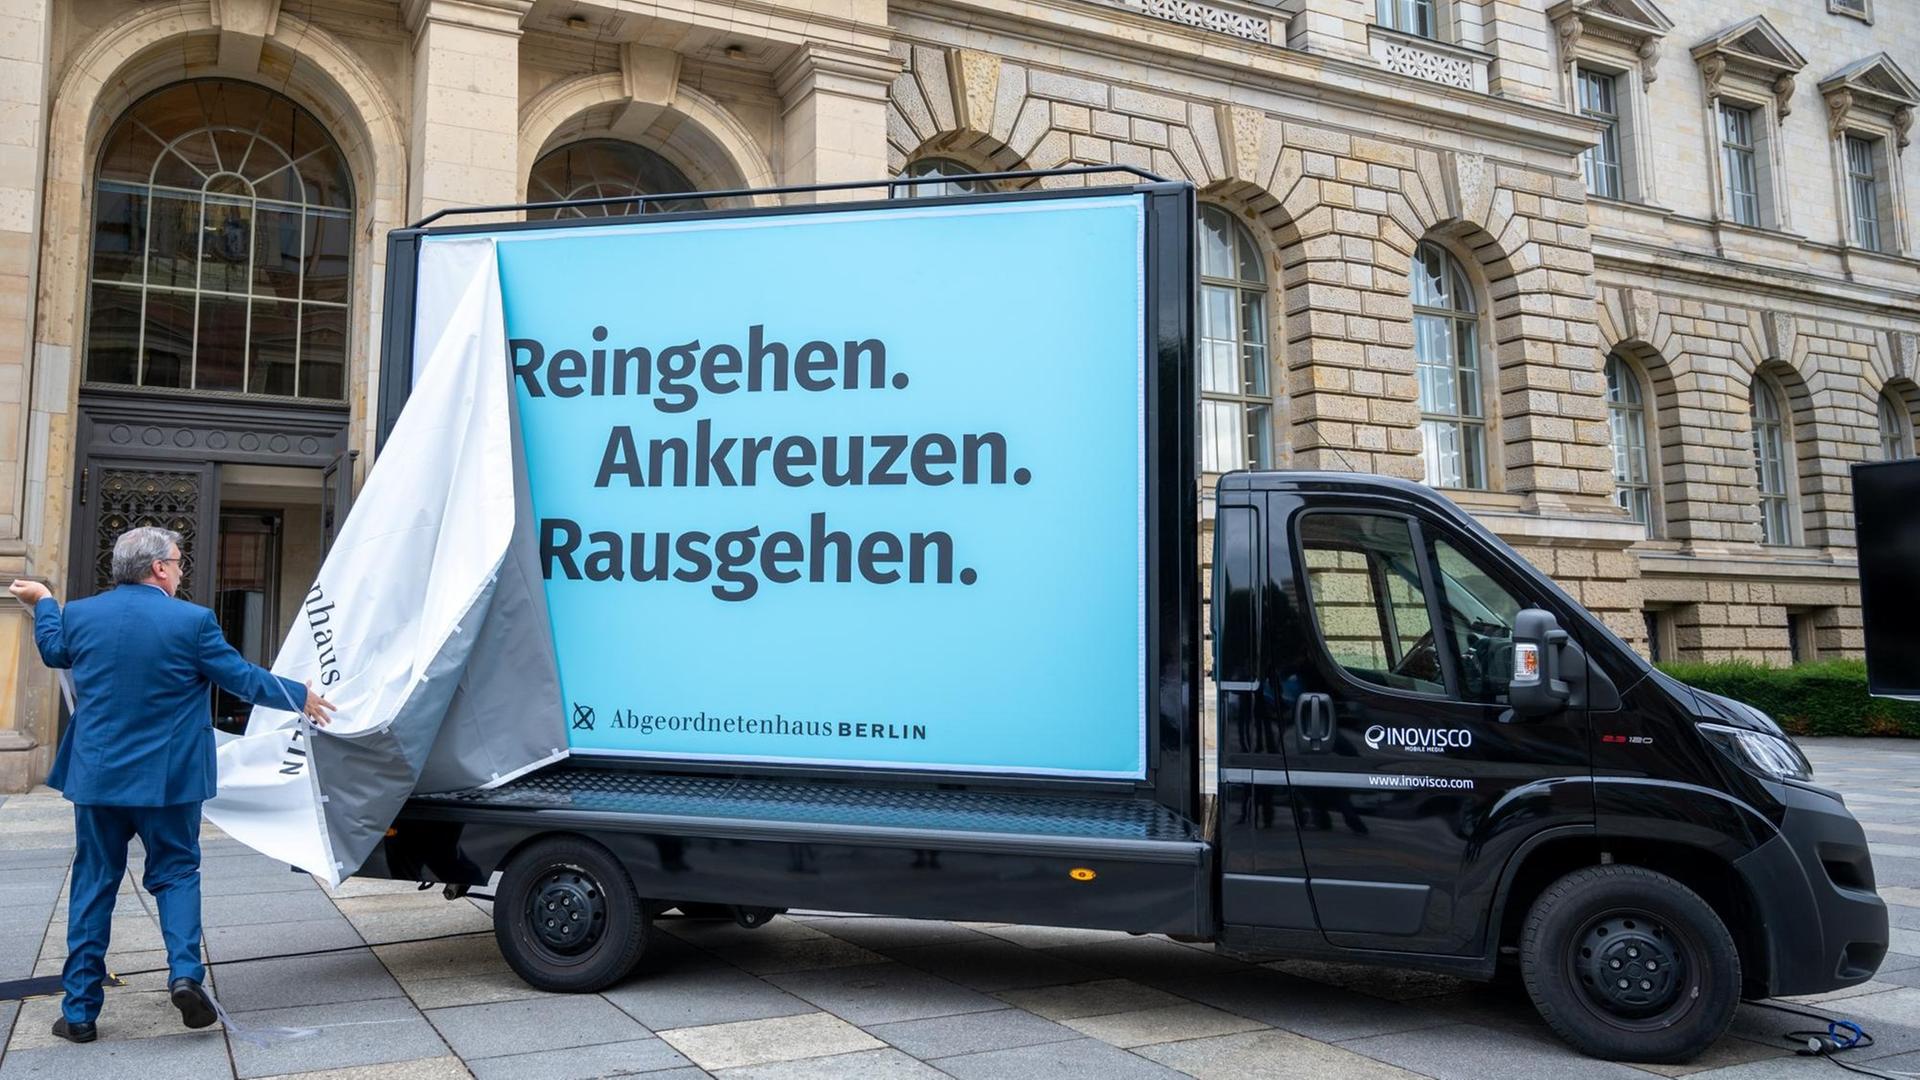 Ralf Wieland (SPD), Präsident des Abgeordnetenhauses von Berlin, enthüllt bei einer Pressekonferenz zur Wahlmobilisierungskampagne für die Wahl zum Berliner Abgeordnetenhaus ein Plakat mit der Aufschrift „Reingehen. Ankreuzen. Rausgehen.“ auf einem Auto.